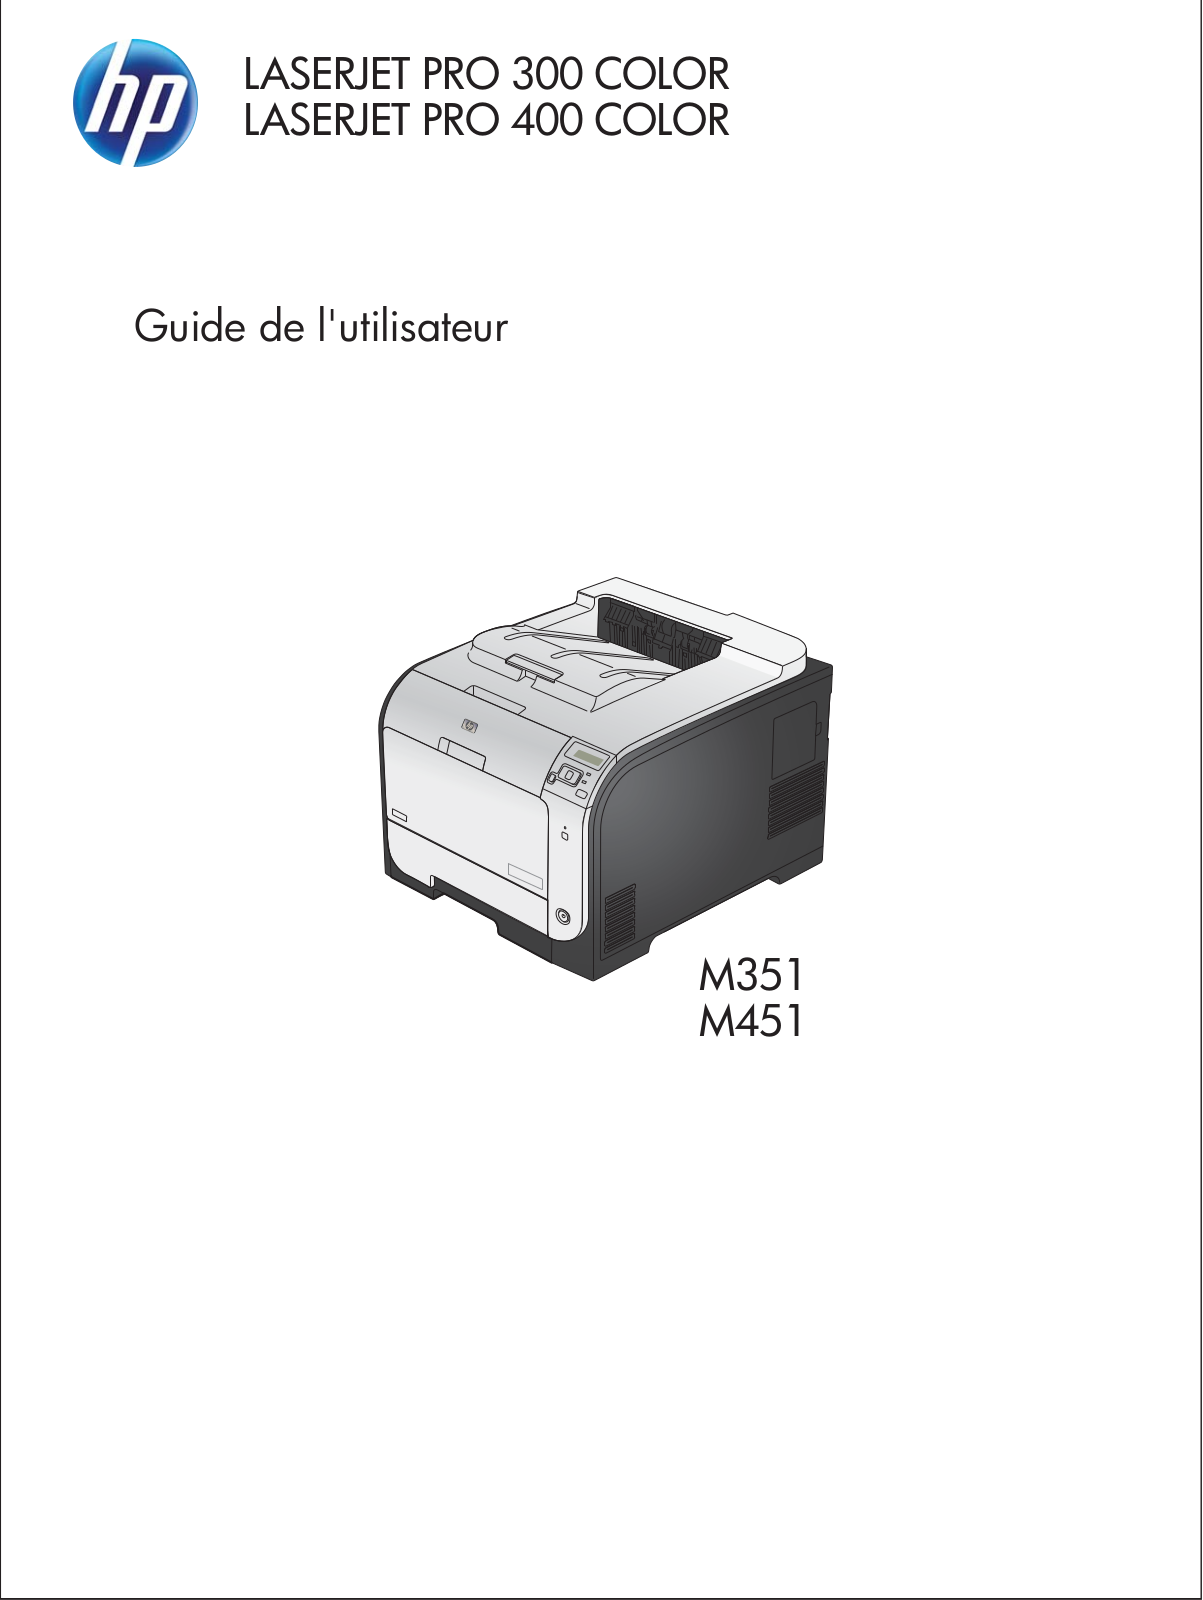 HP LASERJET PRO M451DN (CE957A), LASERJET PRO M451NW (CE957A) User Manual